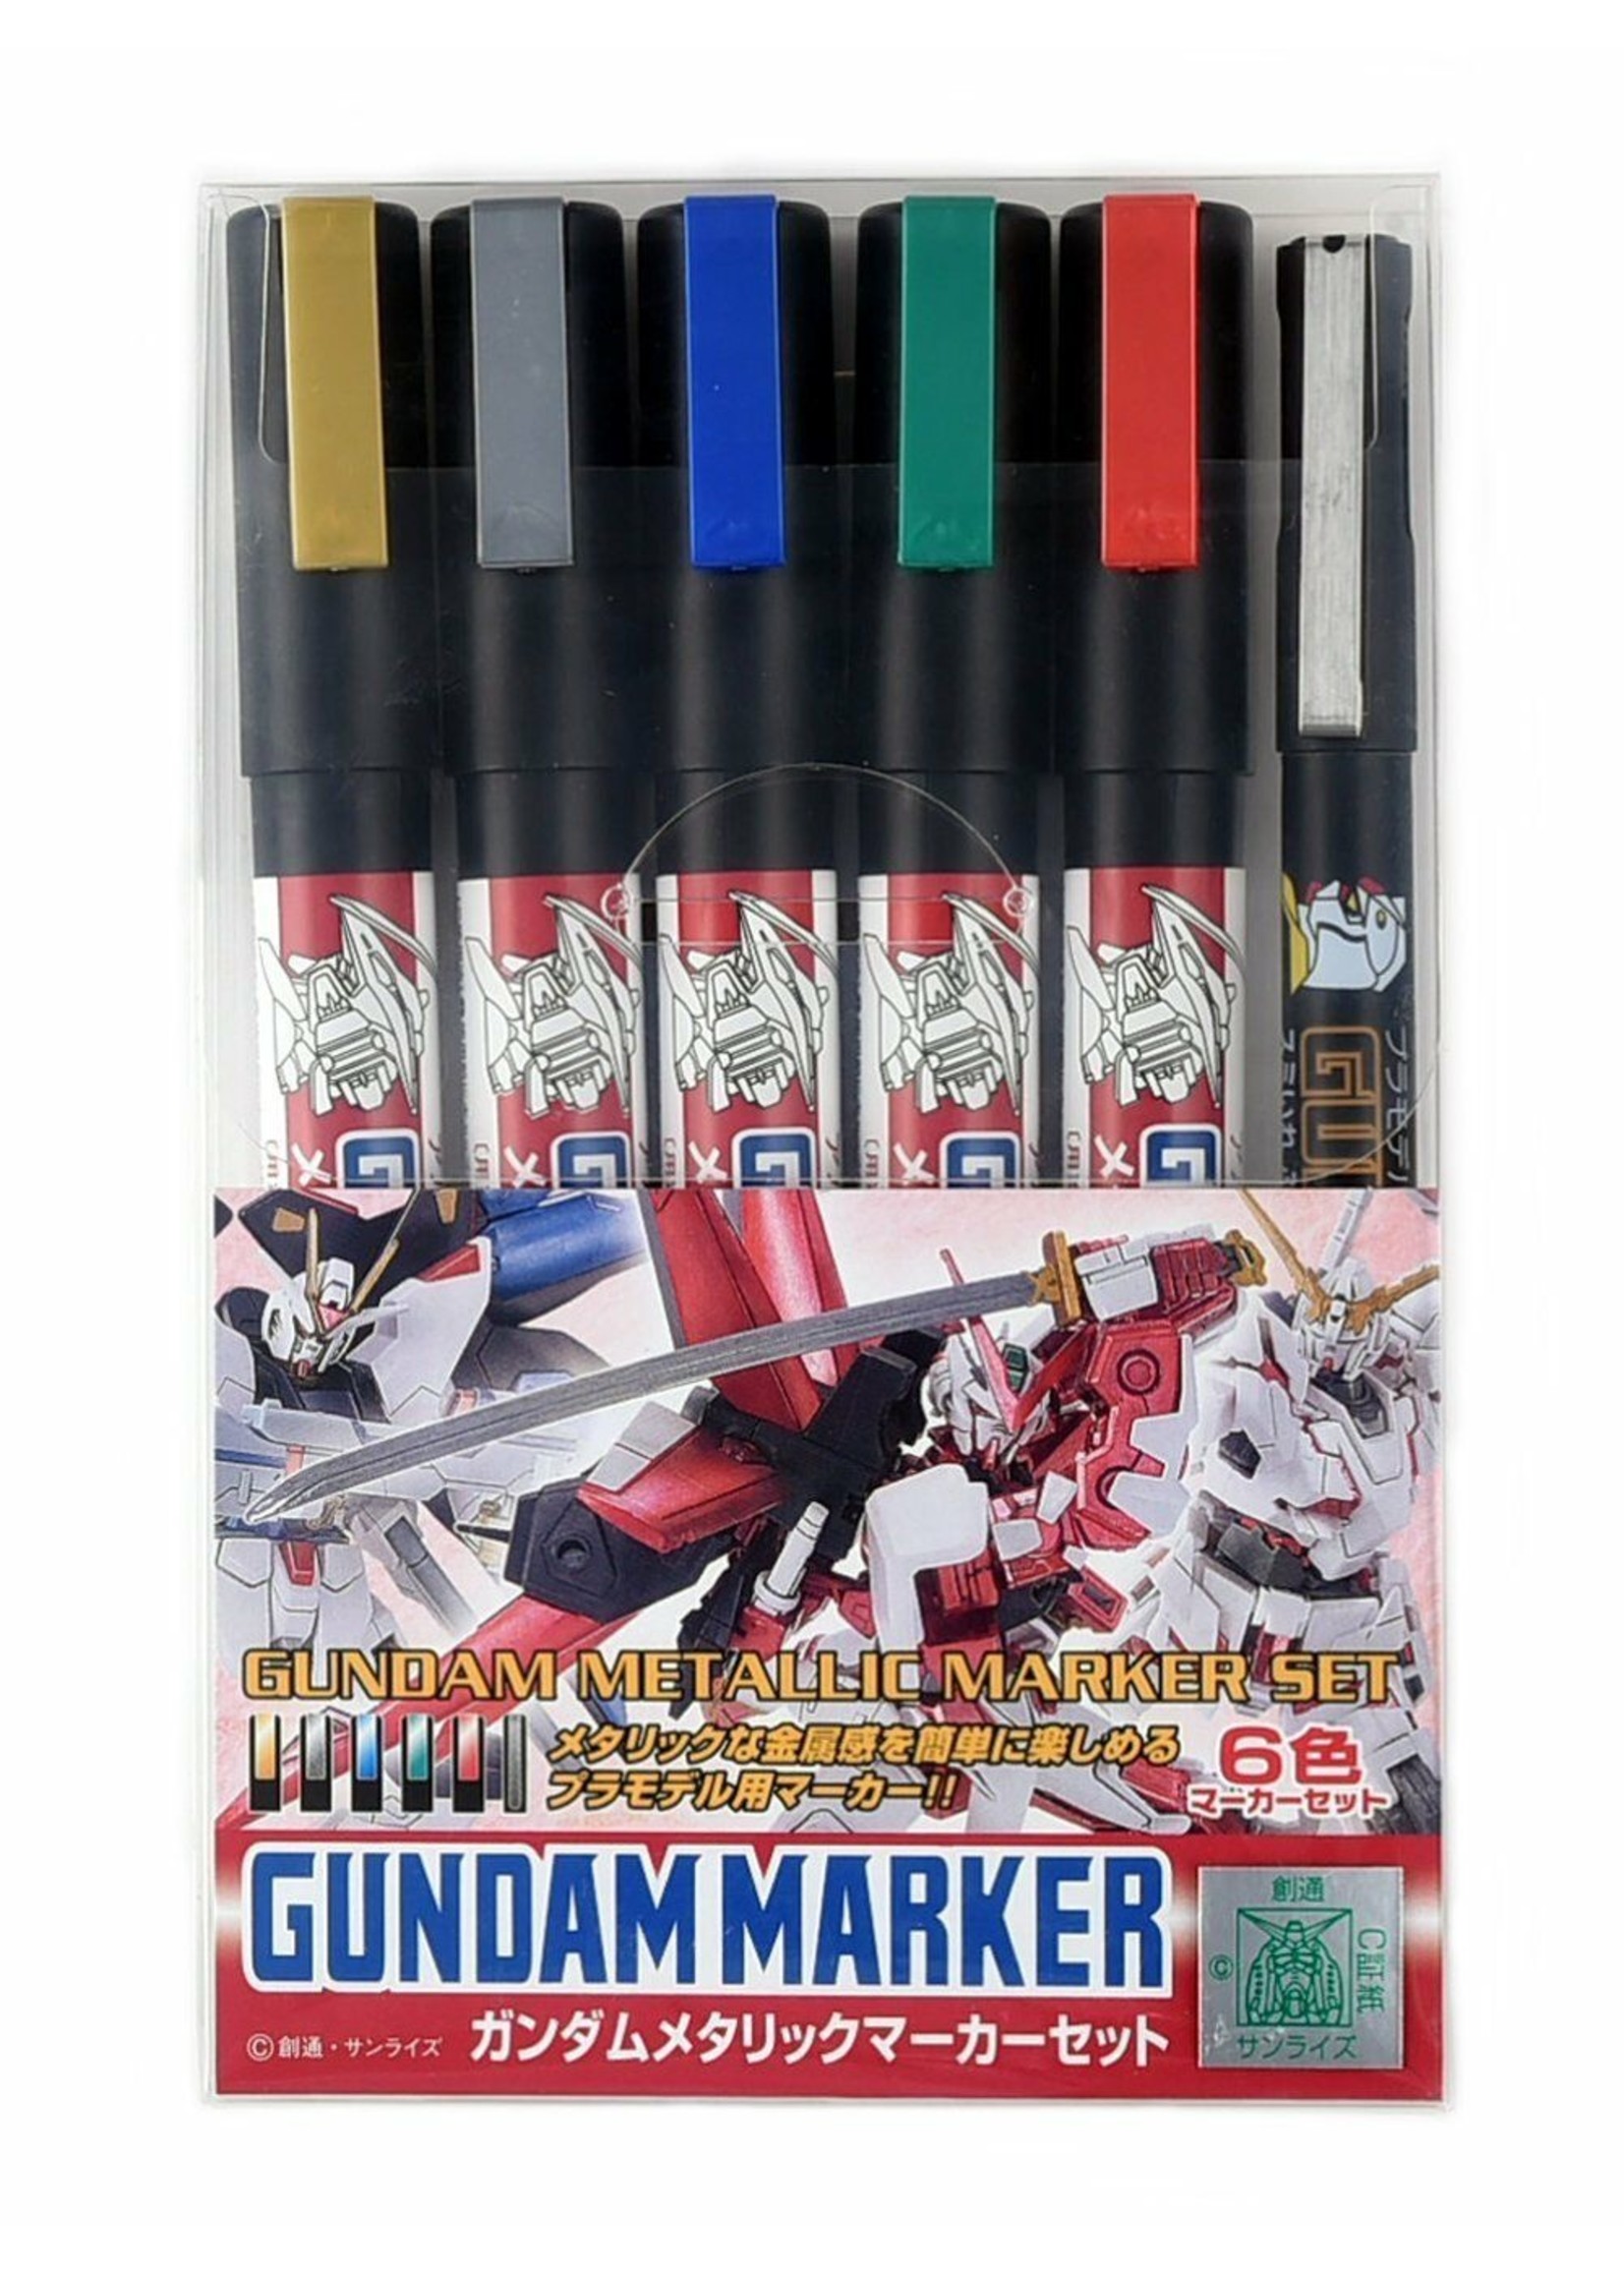 Mr. Hobby GMS121 - Gundam Marker Metallic Set (6 Pack)